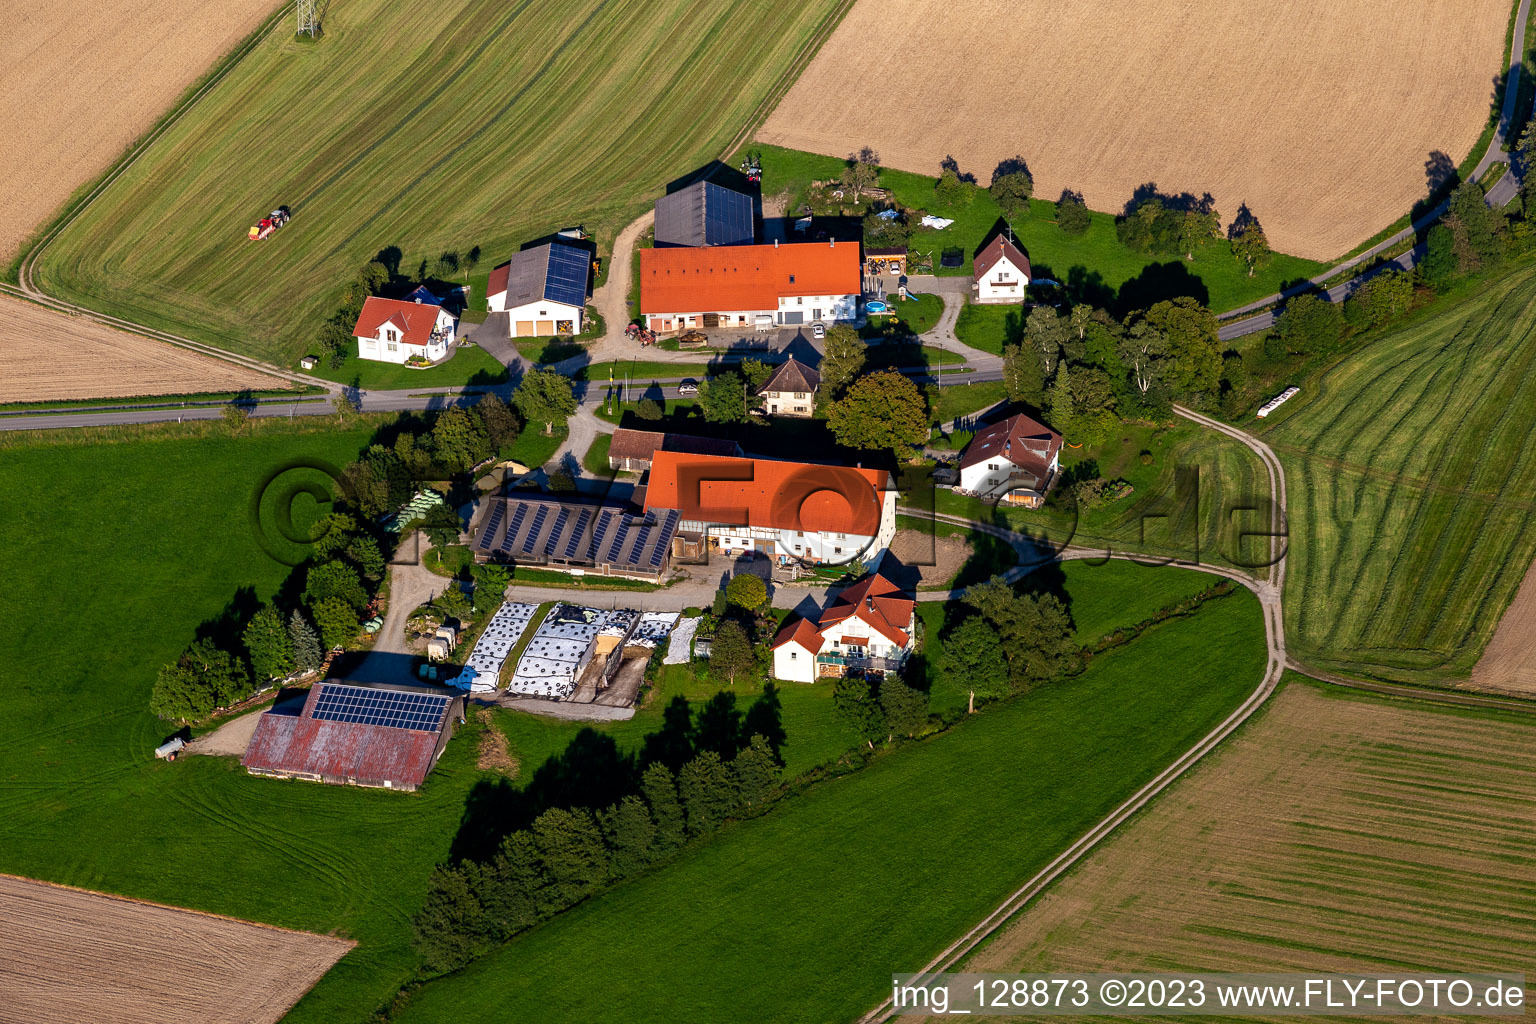 Vue aérienne de Paul Stehlé à le quartier Michelwinnaden in Bad Waldsee dans le département Bade-Wurtemberg, Allemagne